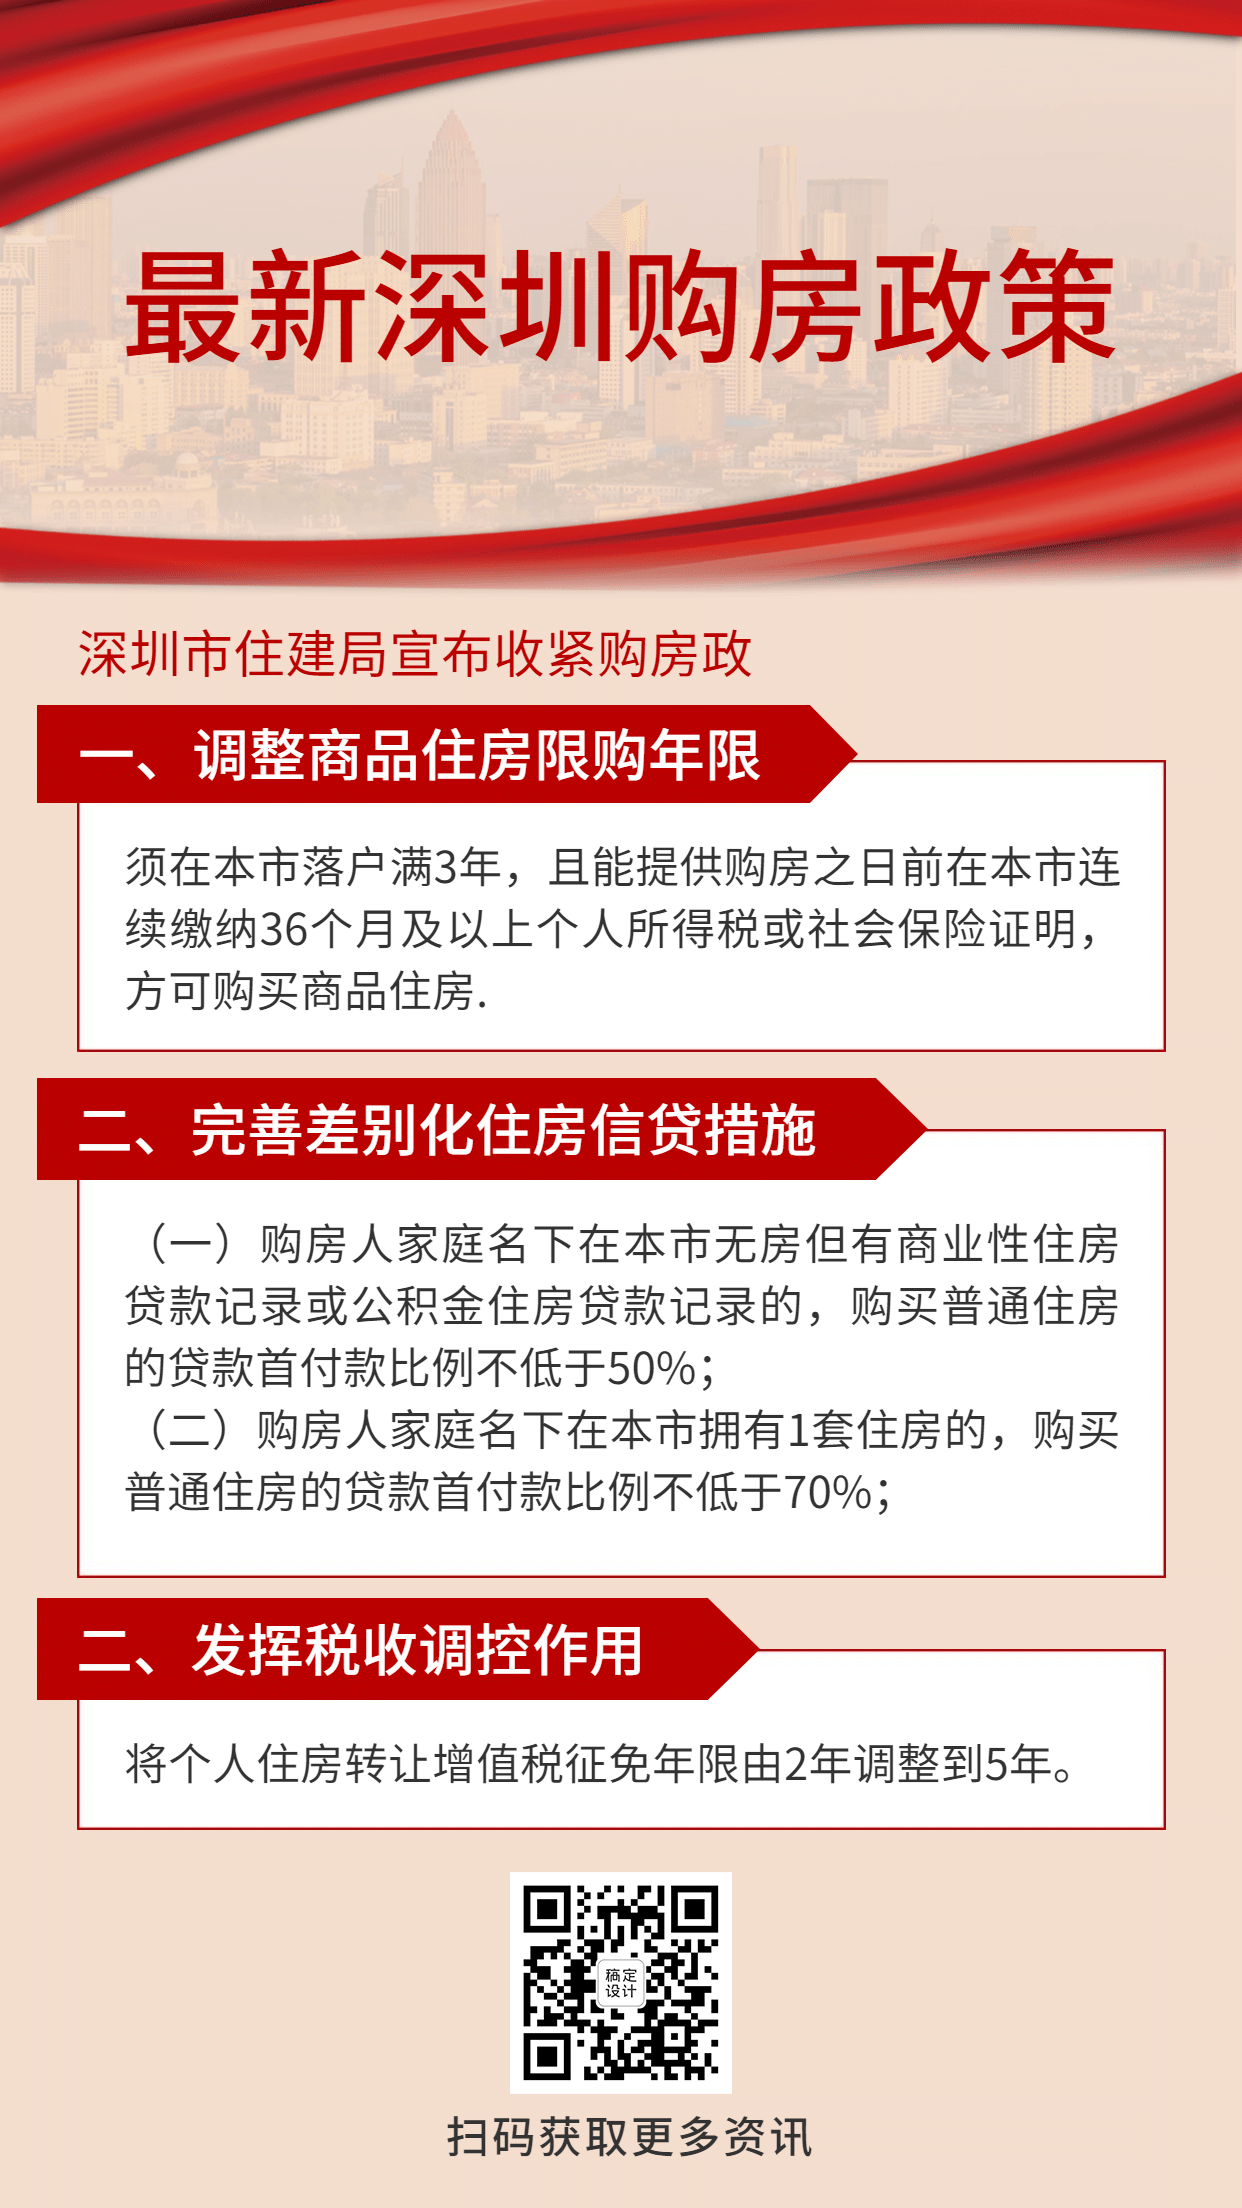 地产深圳房产消息政策手机简约海报预览效果